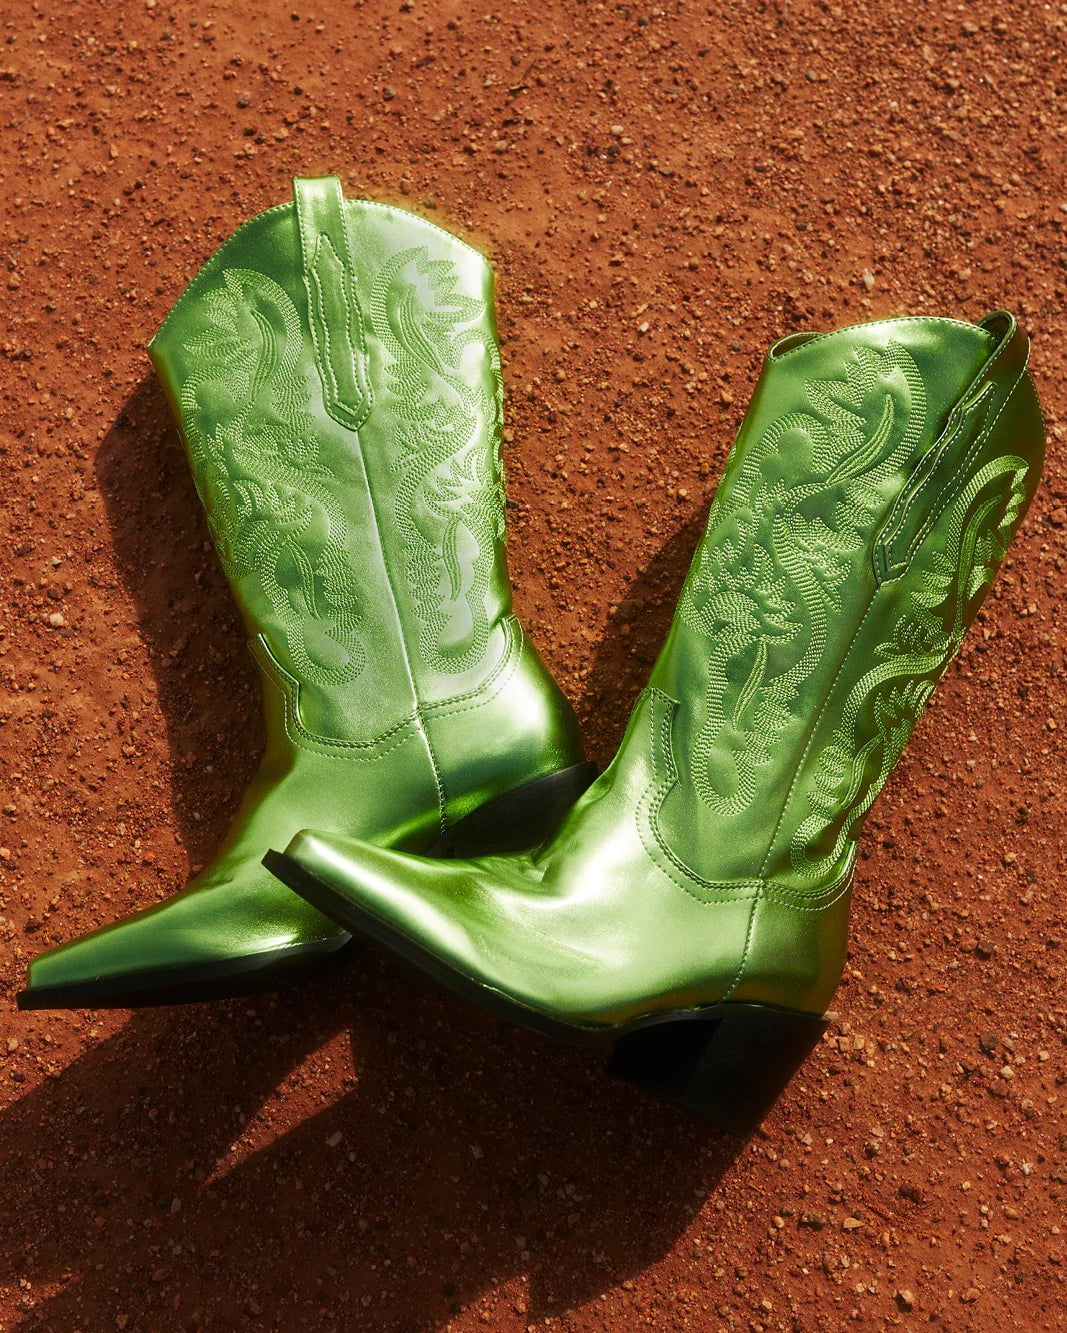 Danilo Metallic Cowboy Boot Green, Shoes by Billini Shoes | LIT Boutique